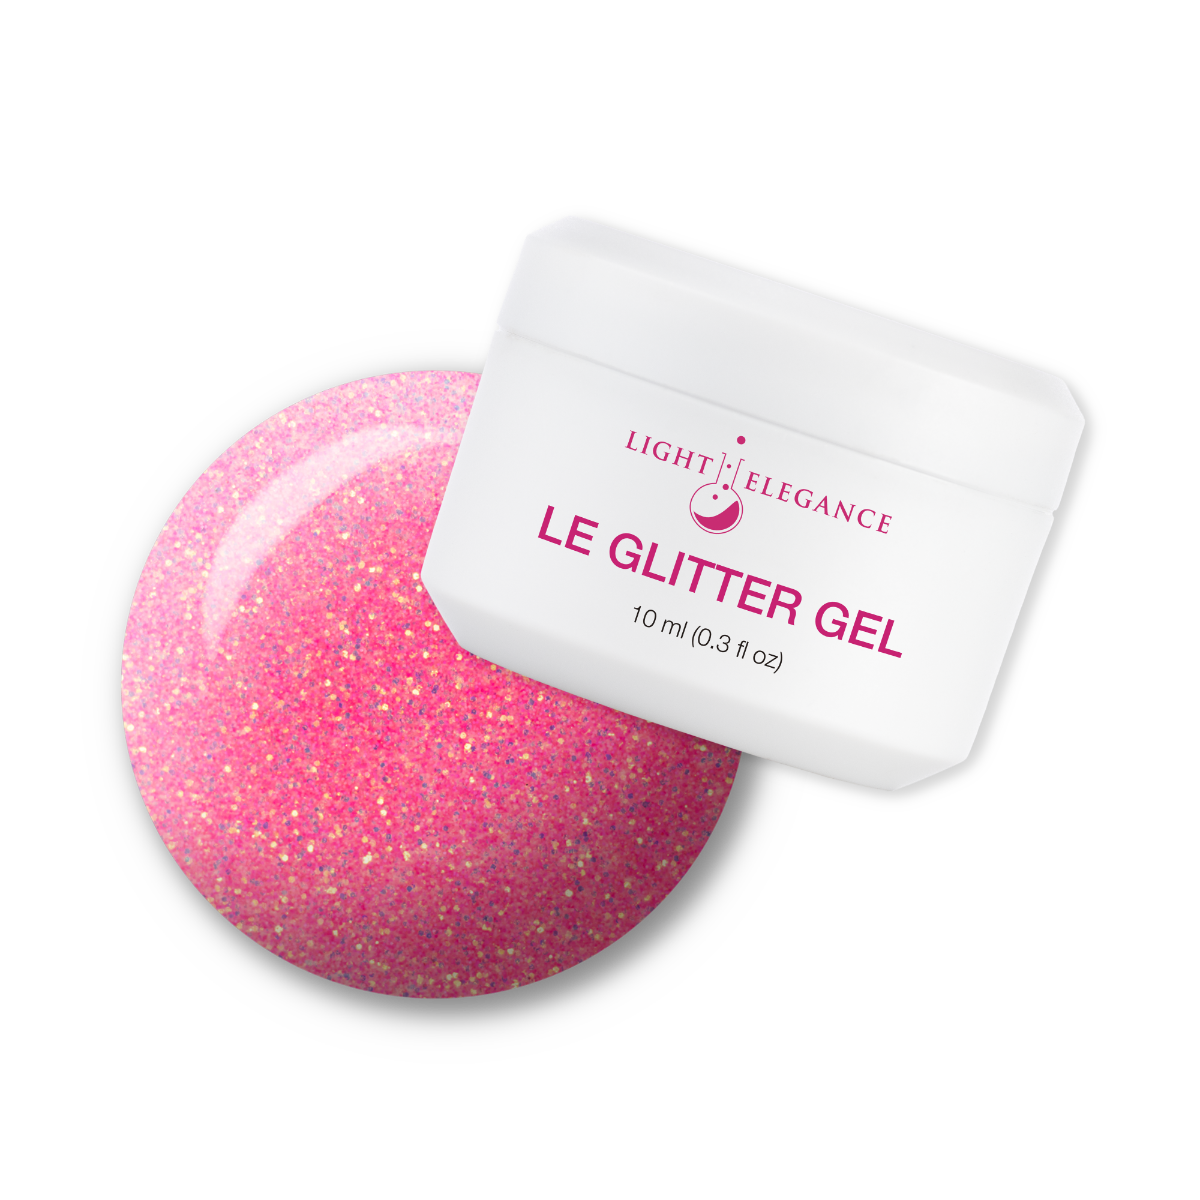 Light Elegance Glitter Gel - Fruit Snacks :: New Packaging